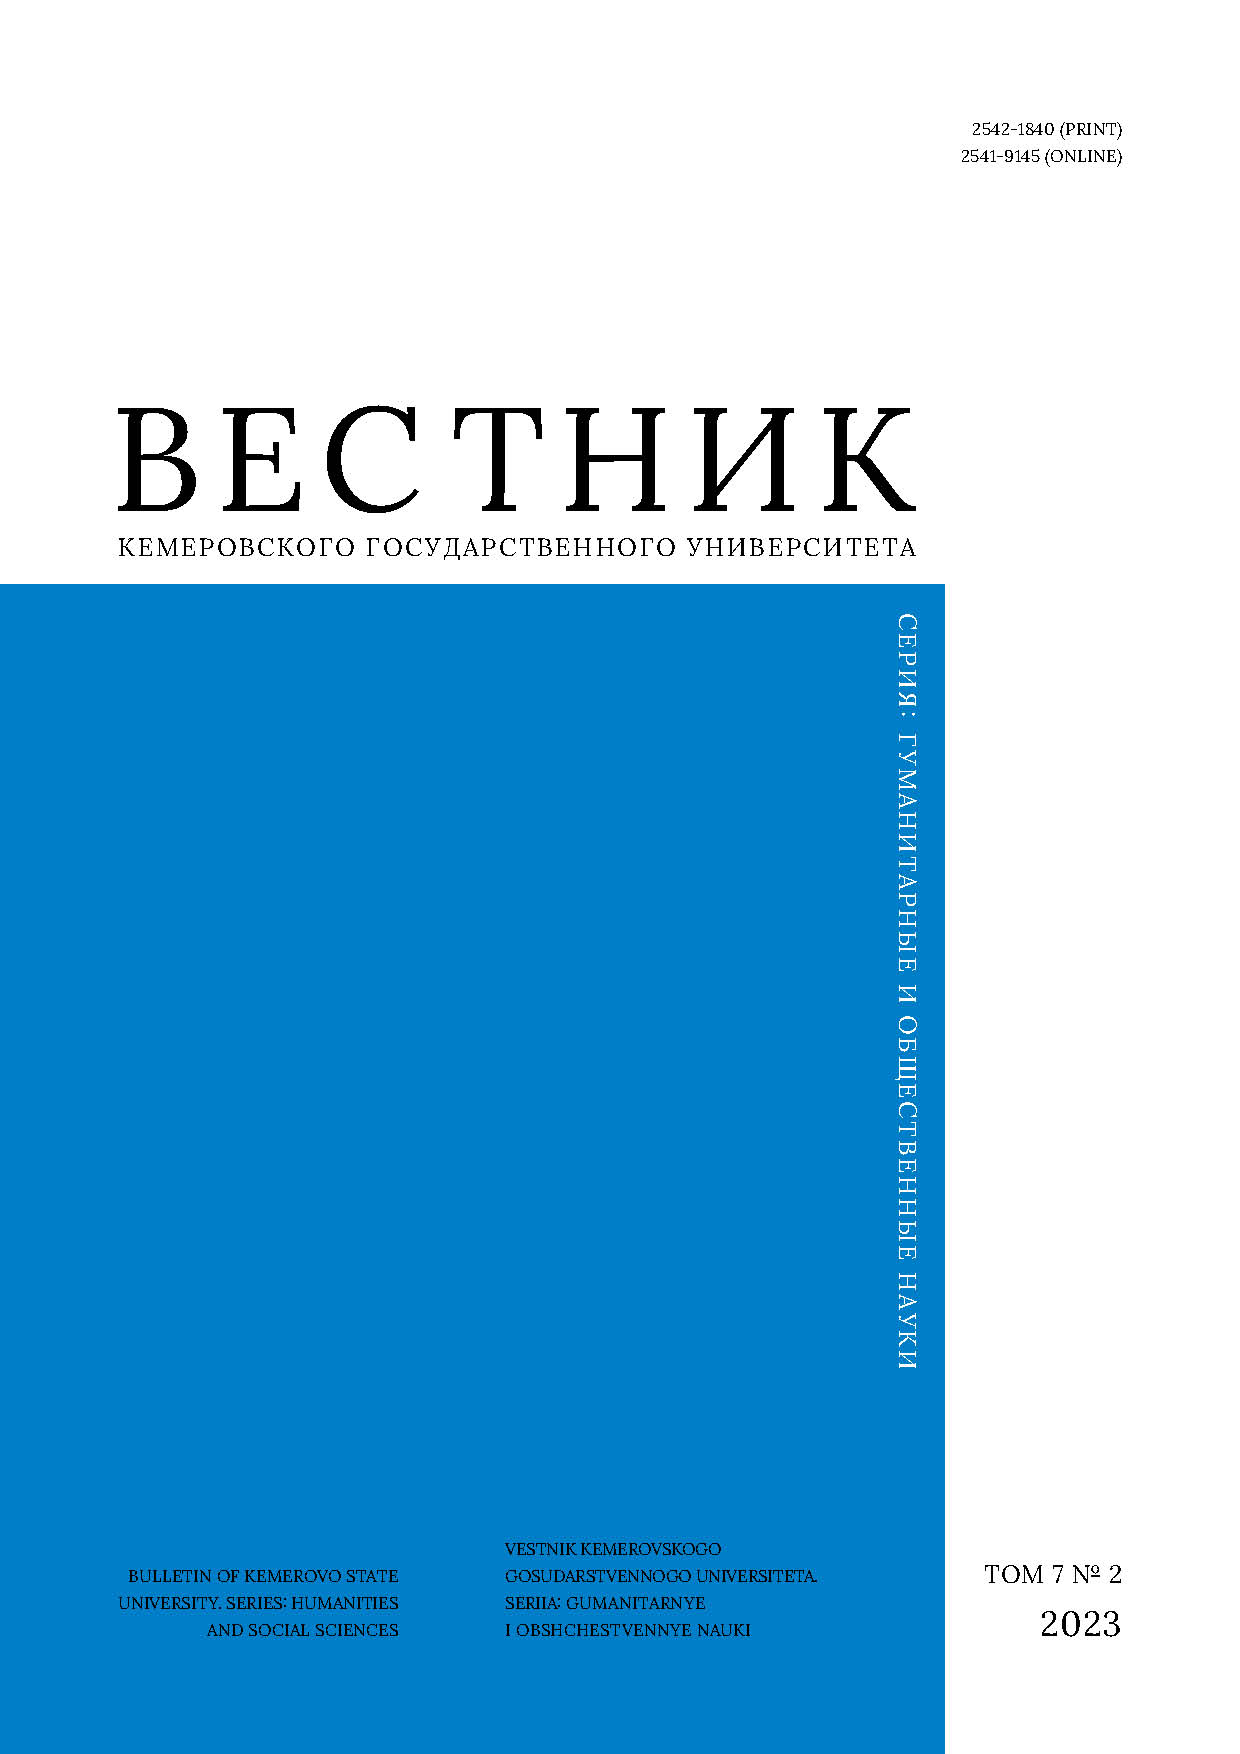             Совет биев как архетип традиционной правовой культуры казахов в XXI в. (из серии статей про архетипы)
    